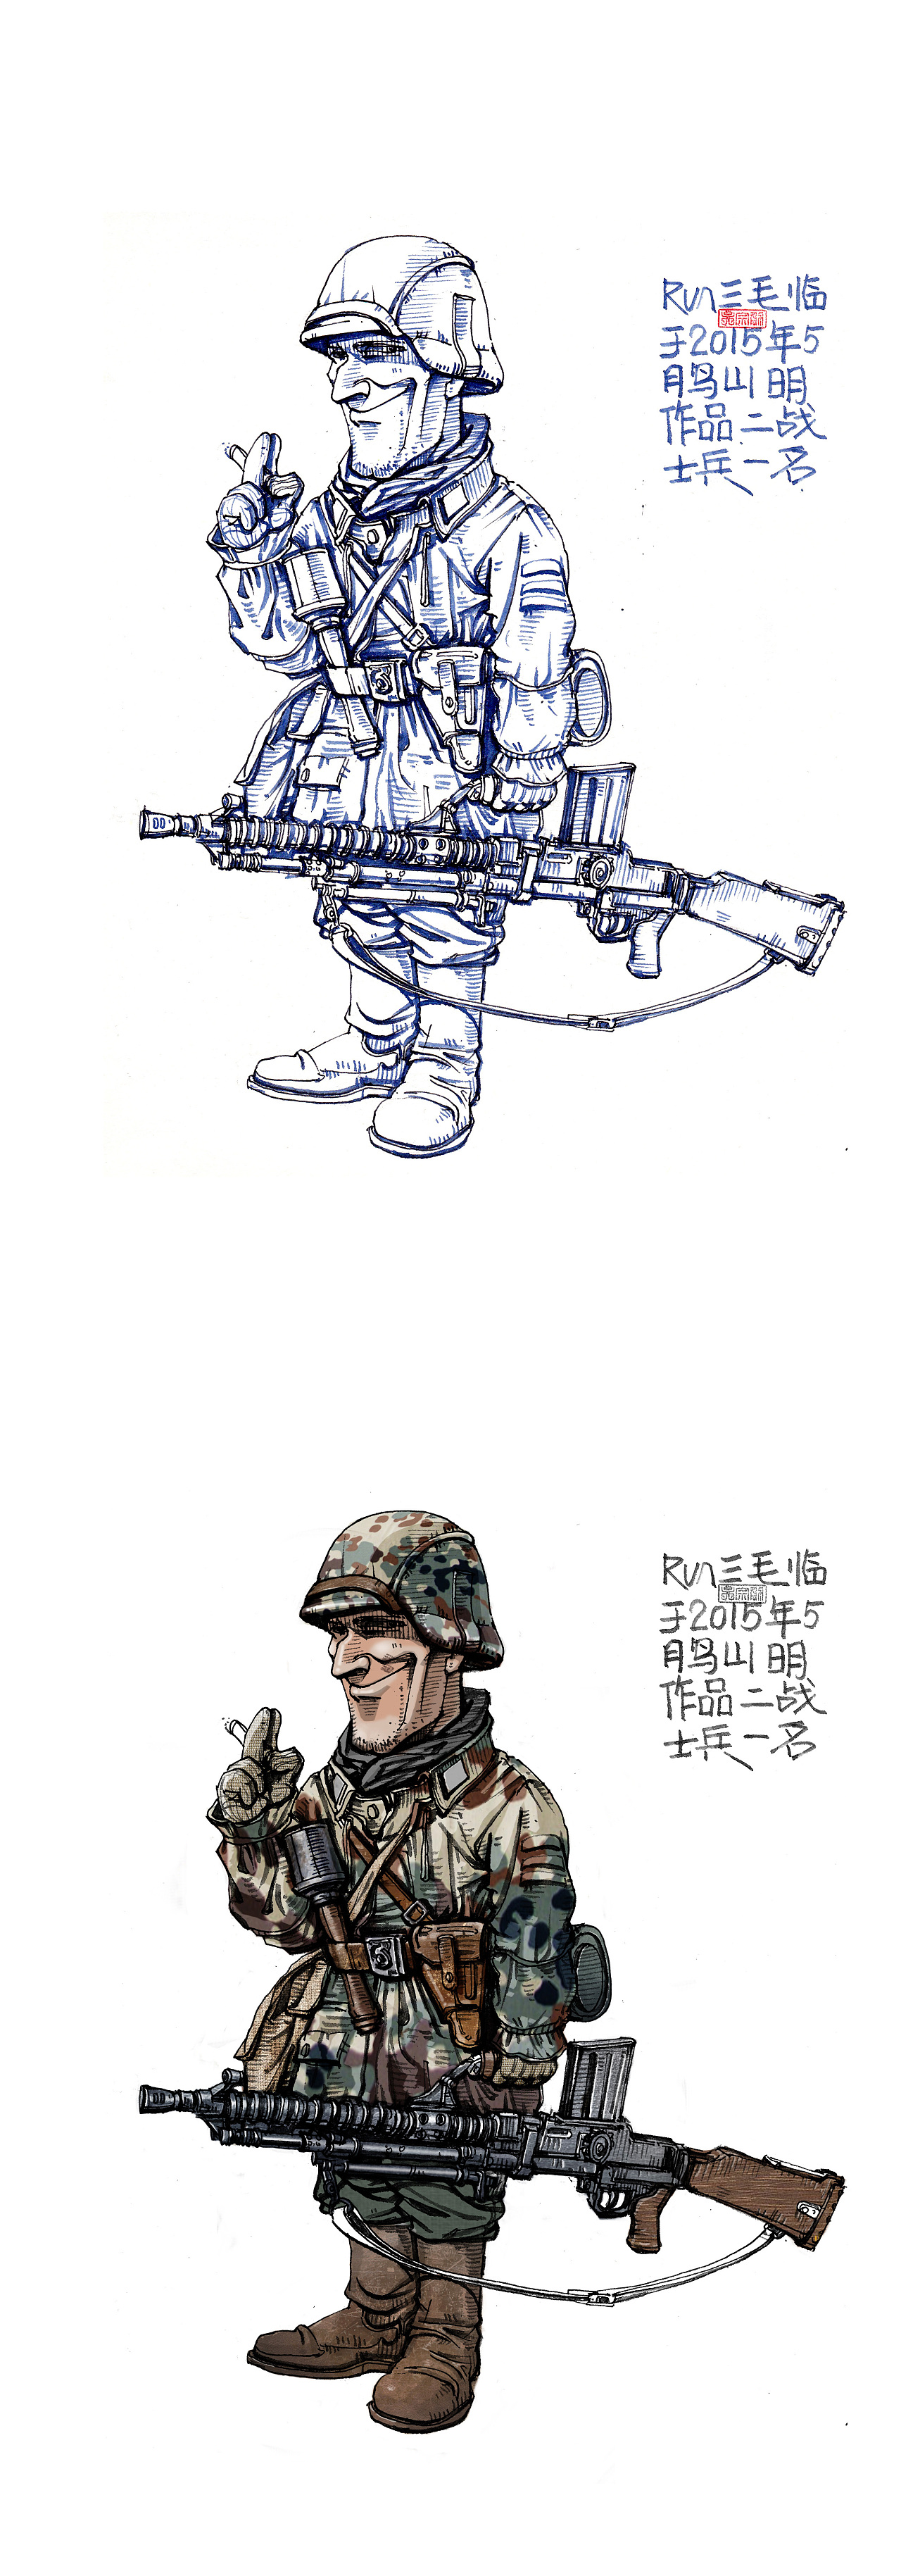 战场上的士兵【原创】钢笔绘画_军事CG图_军事论坛_新浪网